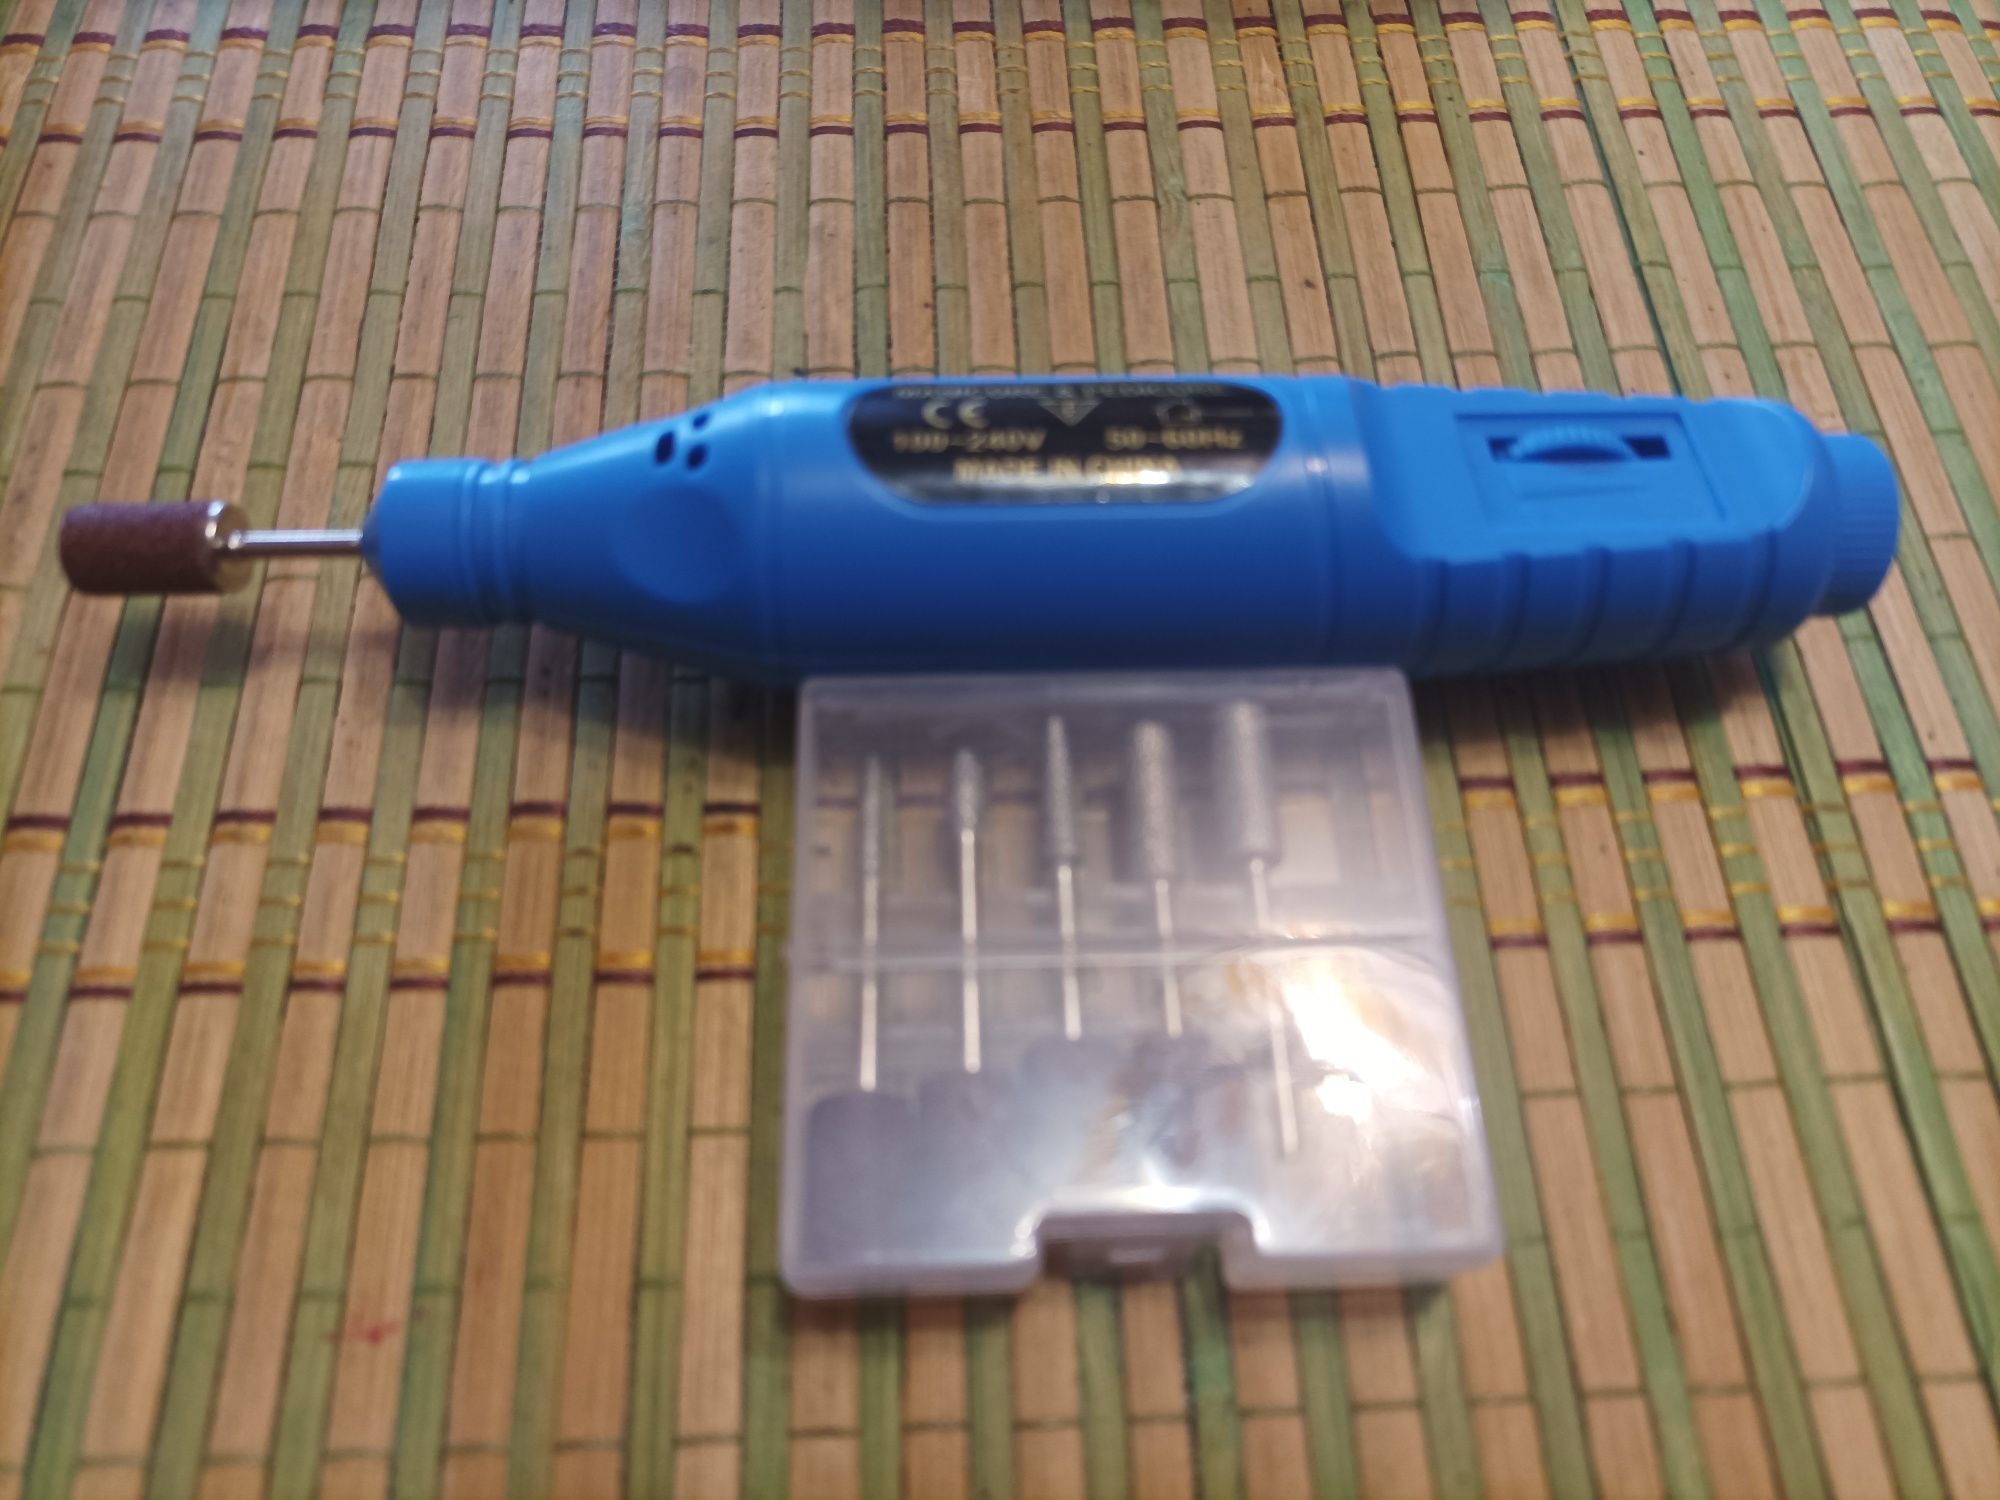 Фрезер для маникюра и педикюра,6 насадок,, питание 5В  от USB .